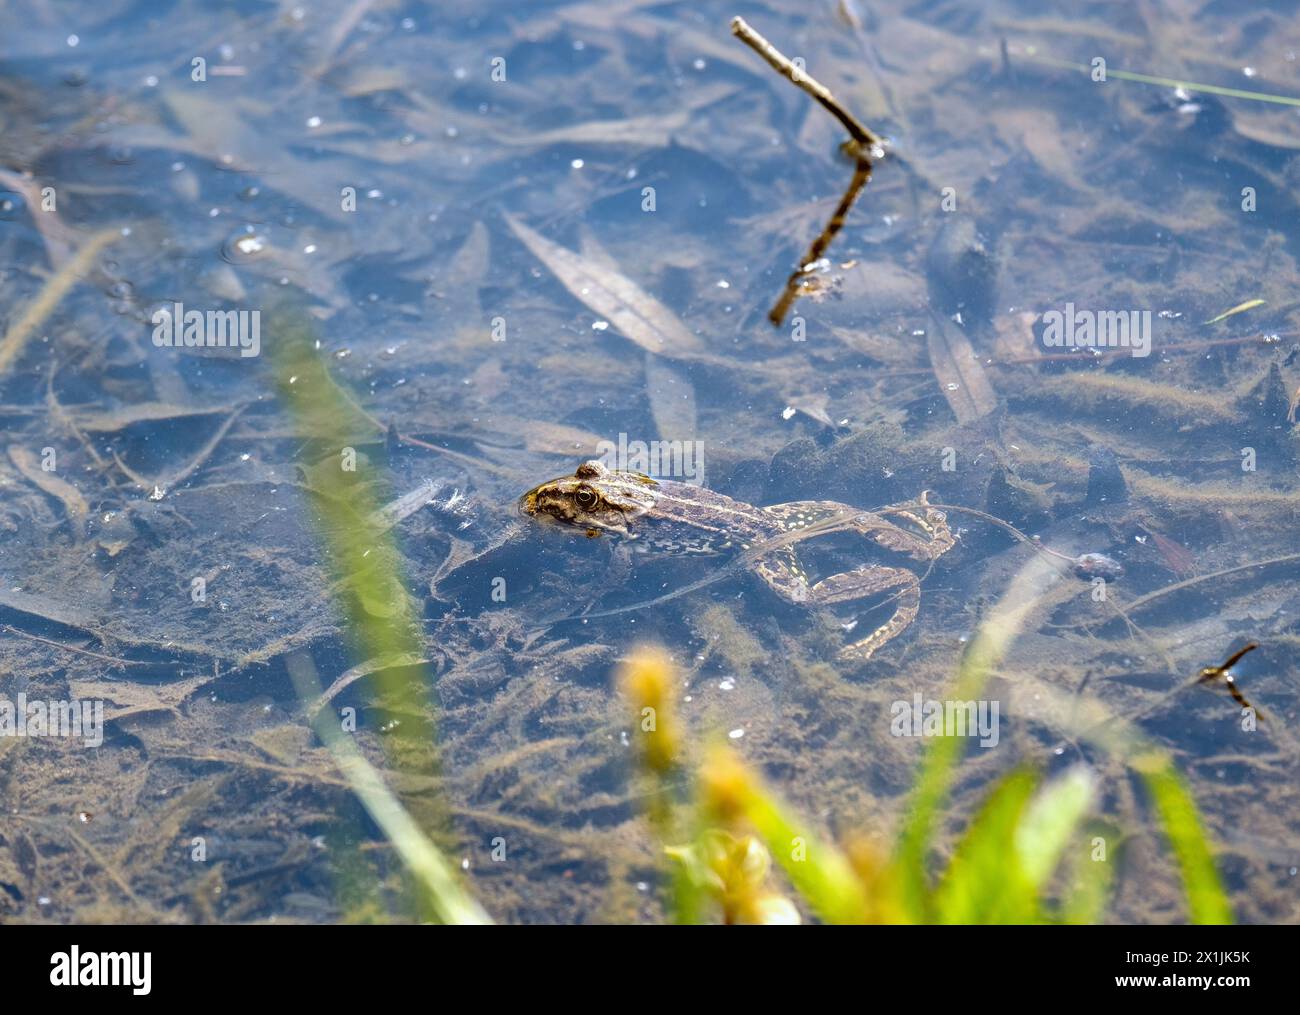 Ein Frosch liegt im Sumpfwasser und streckt seinen Kopf zur Sonne Stockfoto